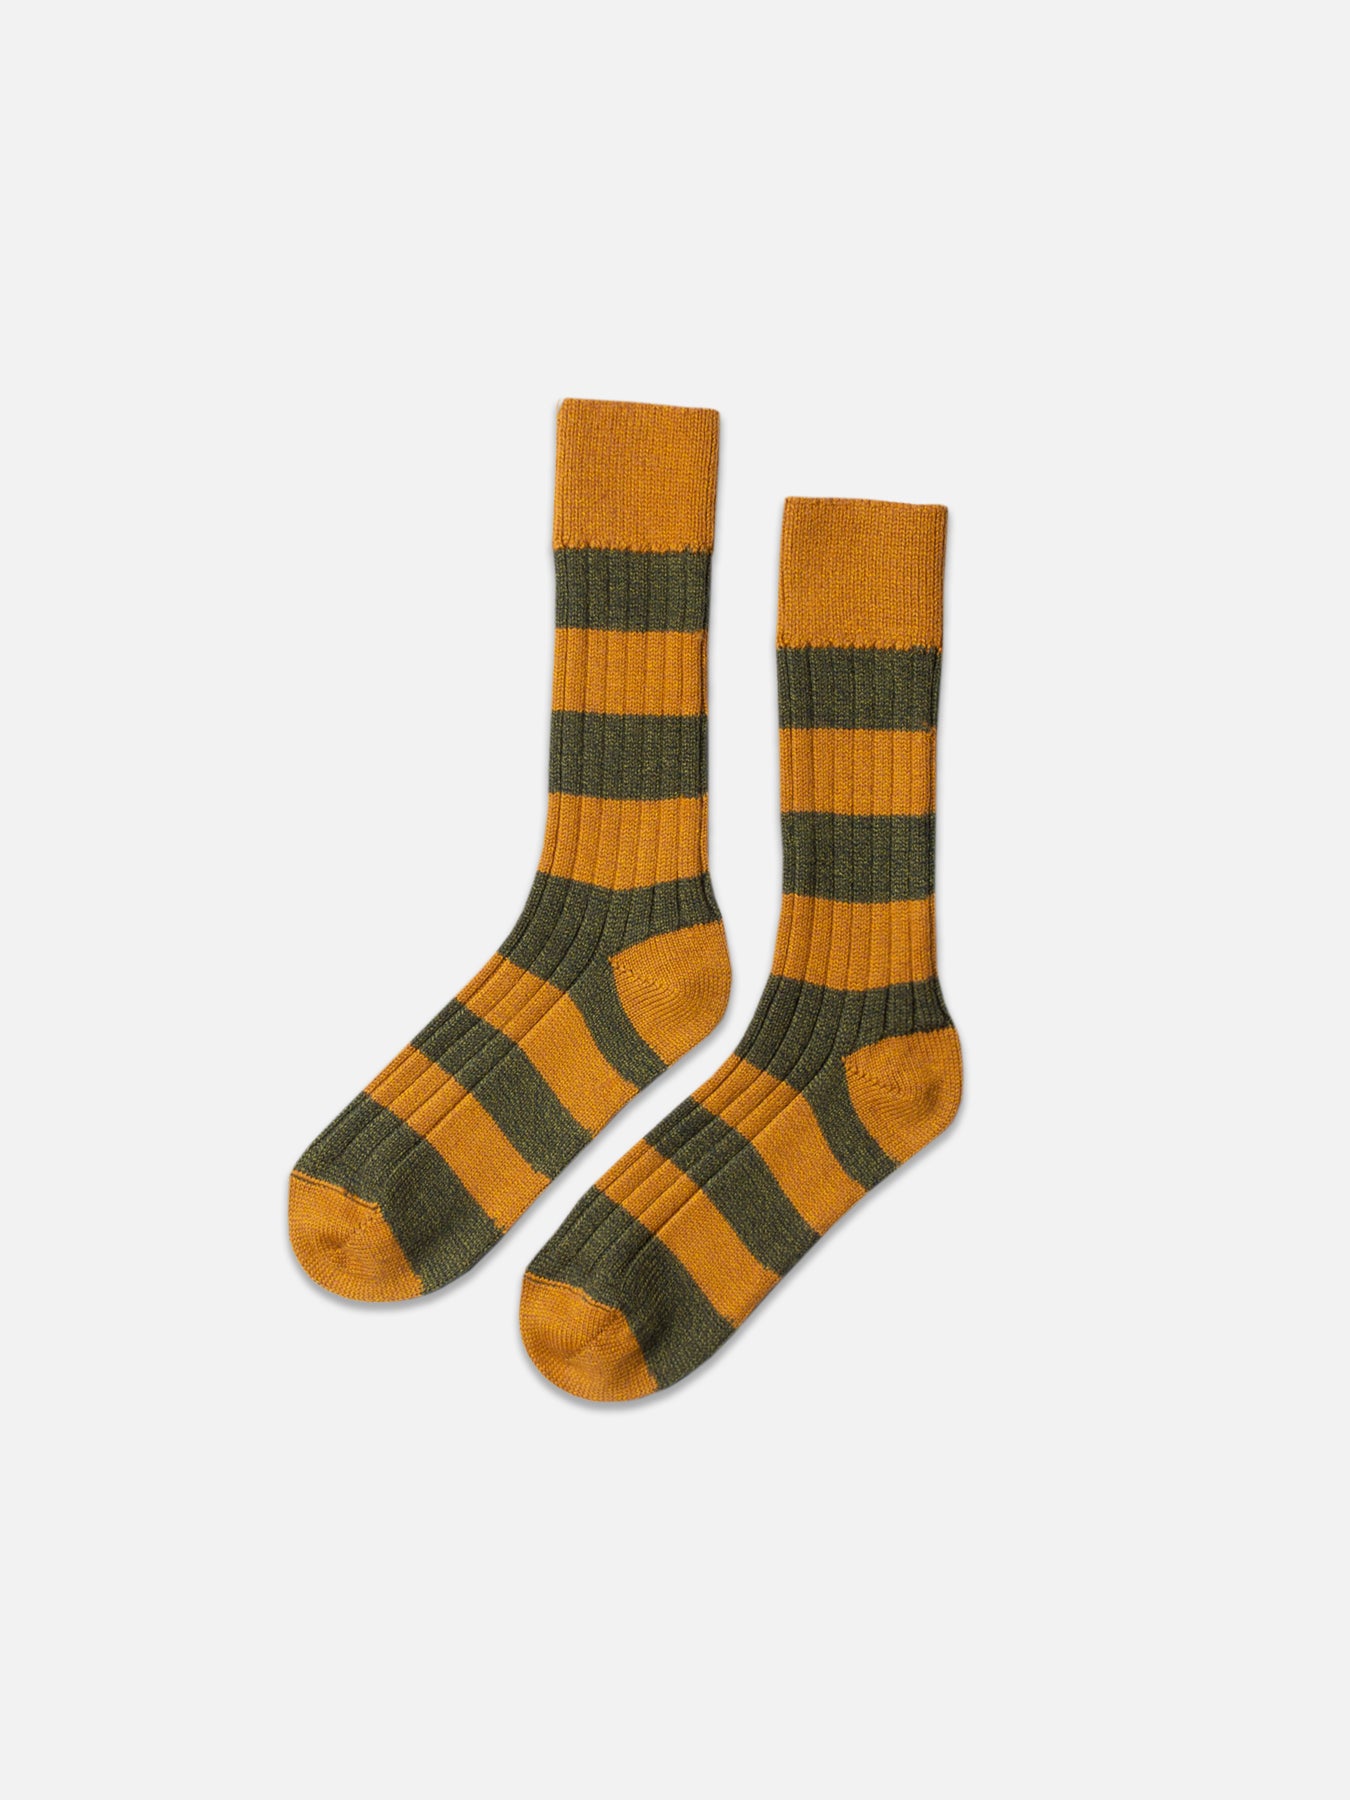 Melrose Merino Wool Socks in Military Green/Ochre Stripe